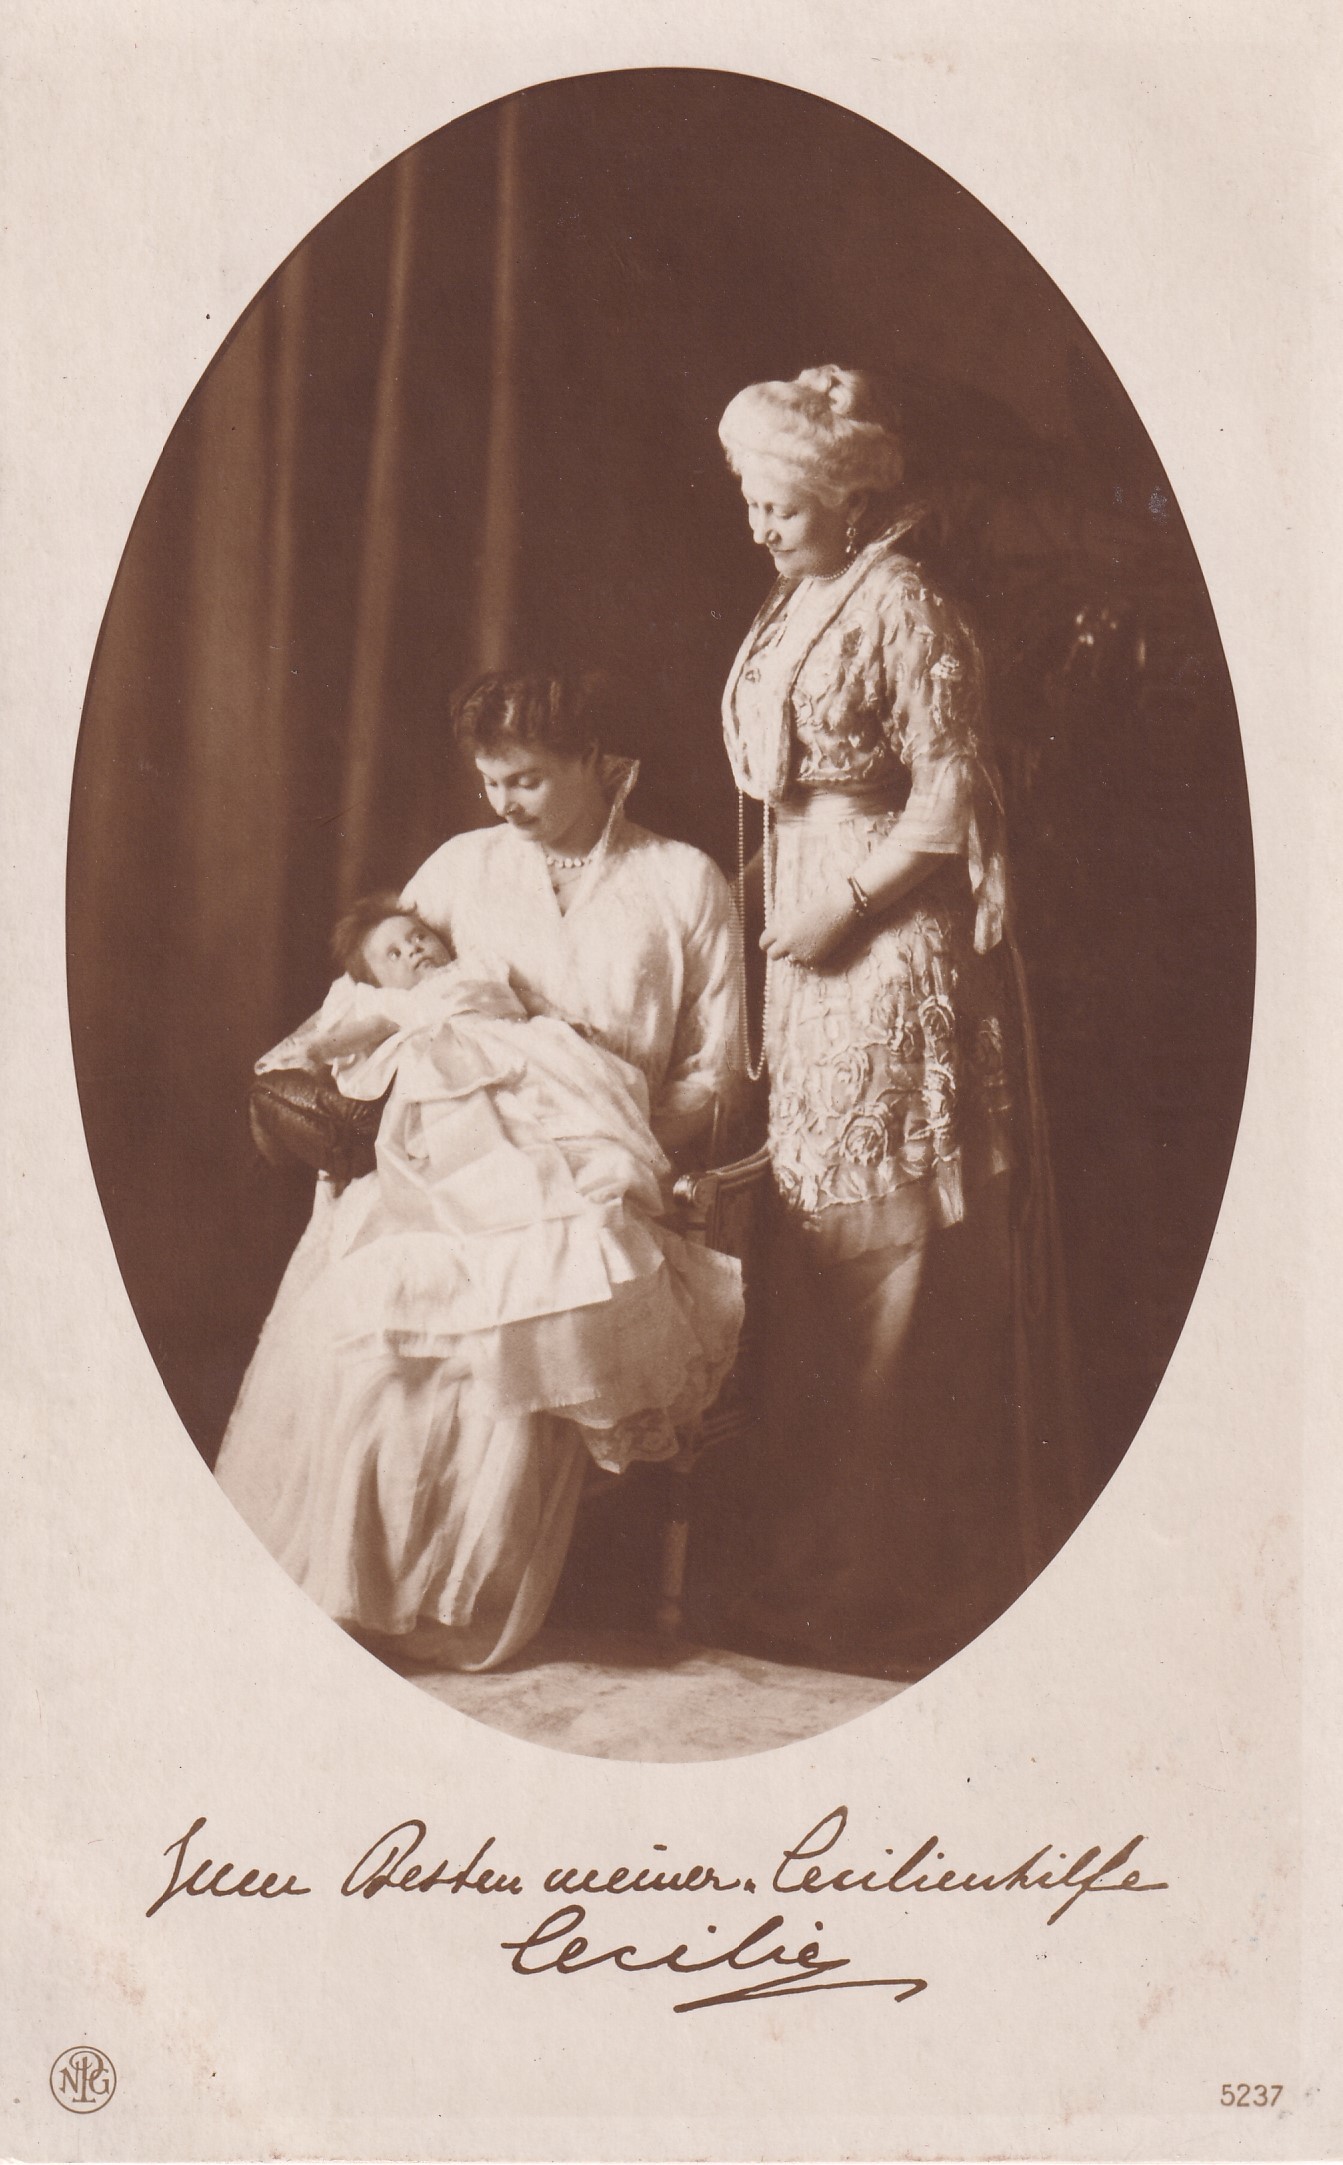 Bildpostkarte mit Foto der Kaiserin Auguste Viktoria, ihrer Schwiegertochter Cecilie und Enkelin Alexandrine, 1915 (Schloß Wernigerode GmbH RR-F)